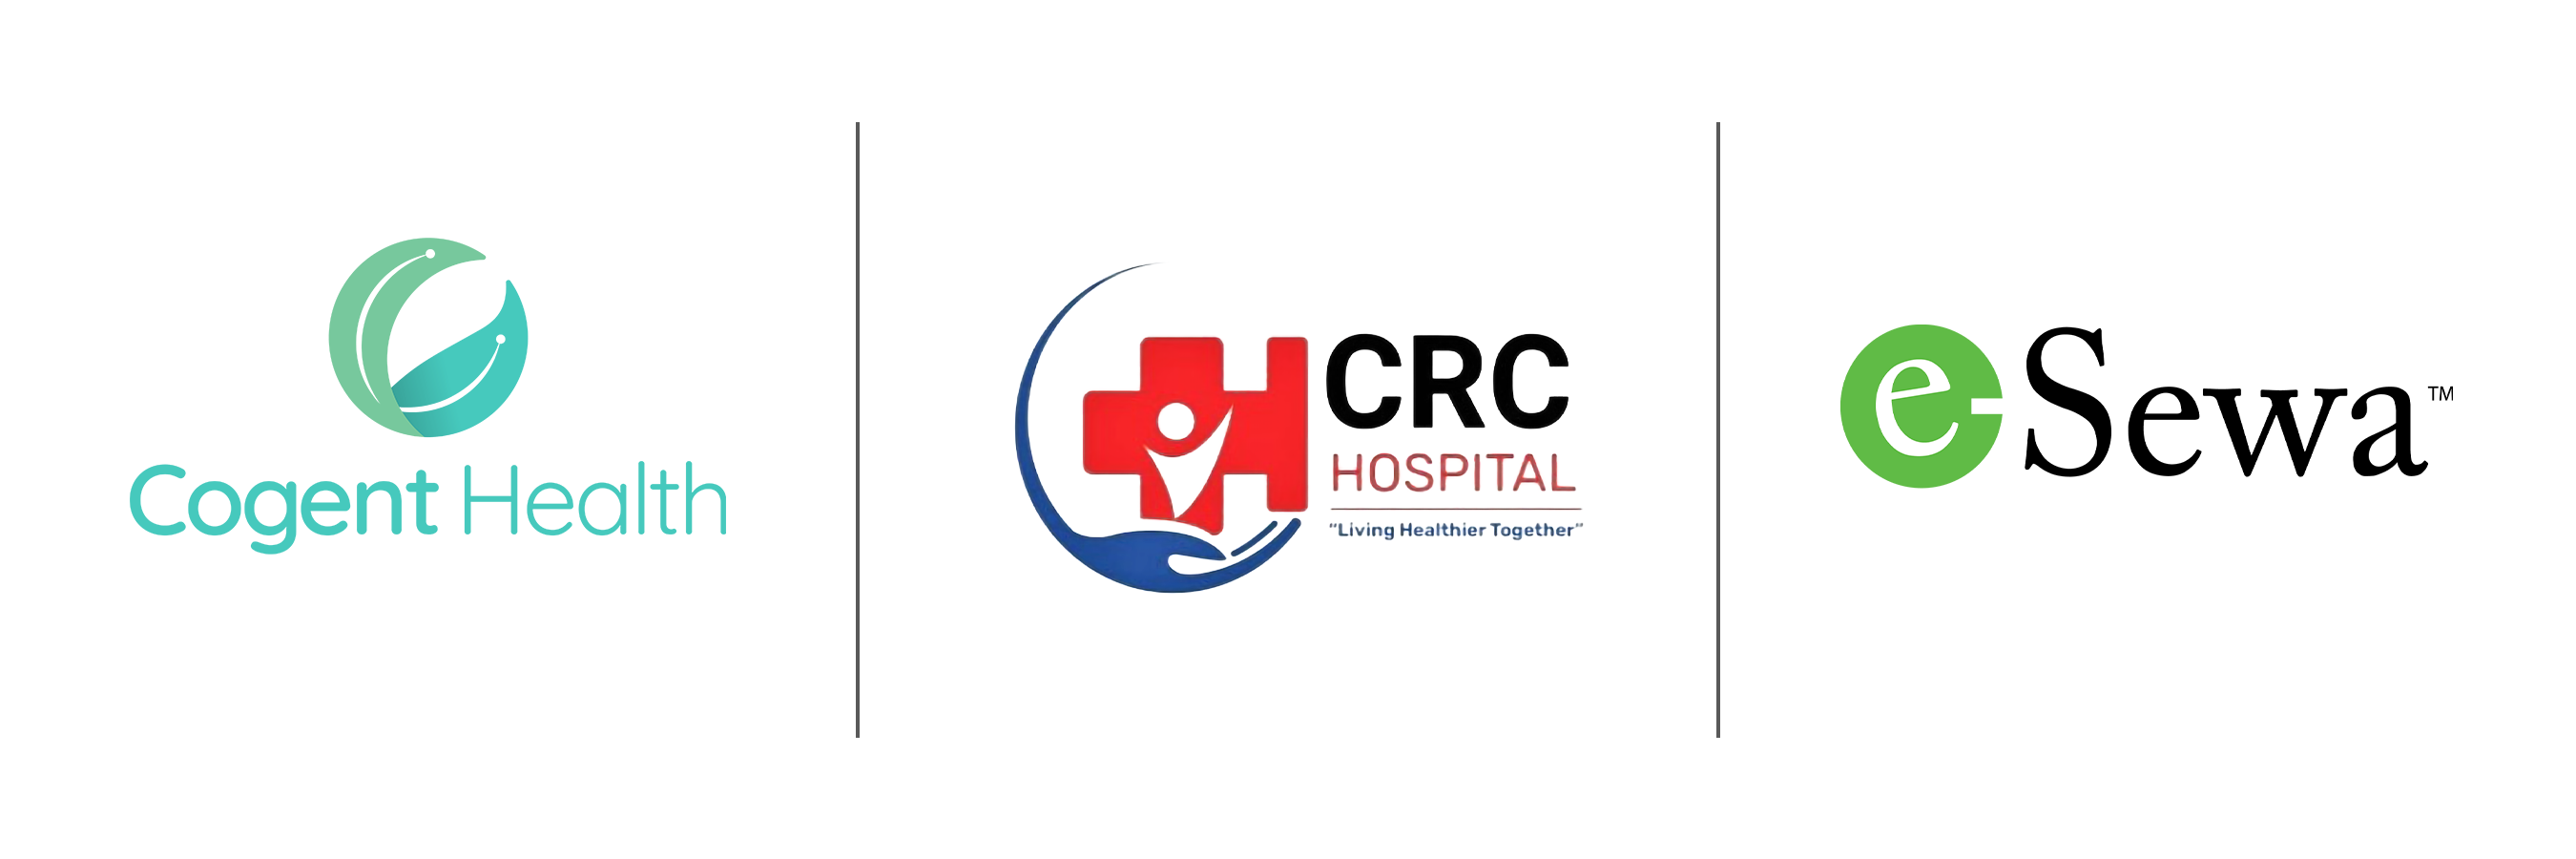 नेपालगन्जको एचसीआरसी अस्पताल इ अपोइन्टमेन्ट प्लेटफर्ममा जोडियो